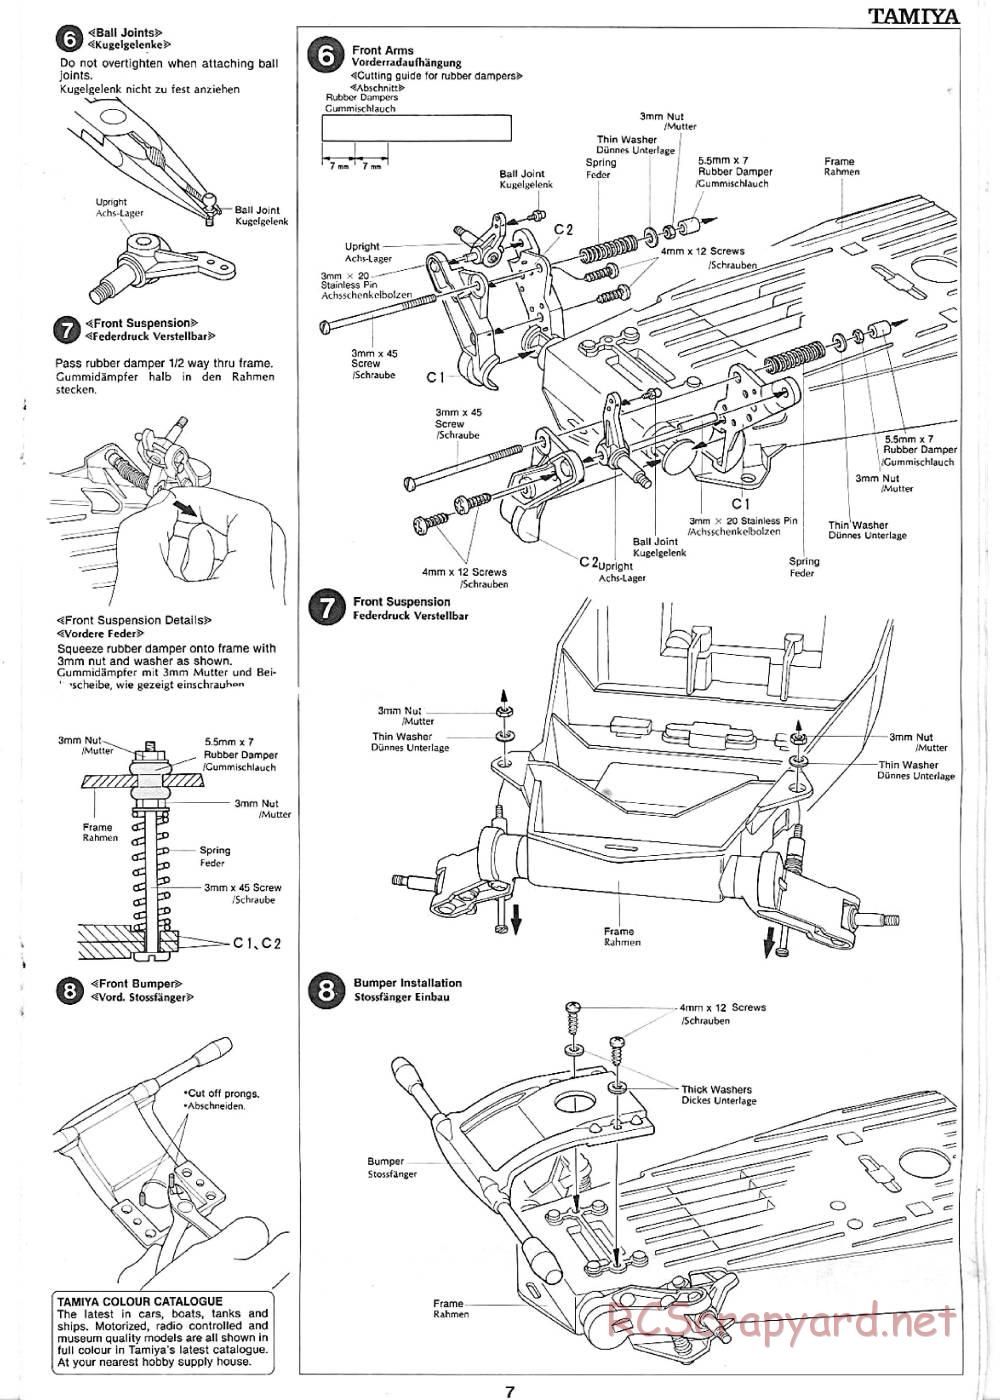 Tamiya - Sand Rover - 58024 - Manual - Page 7